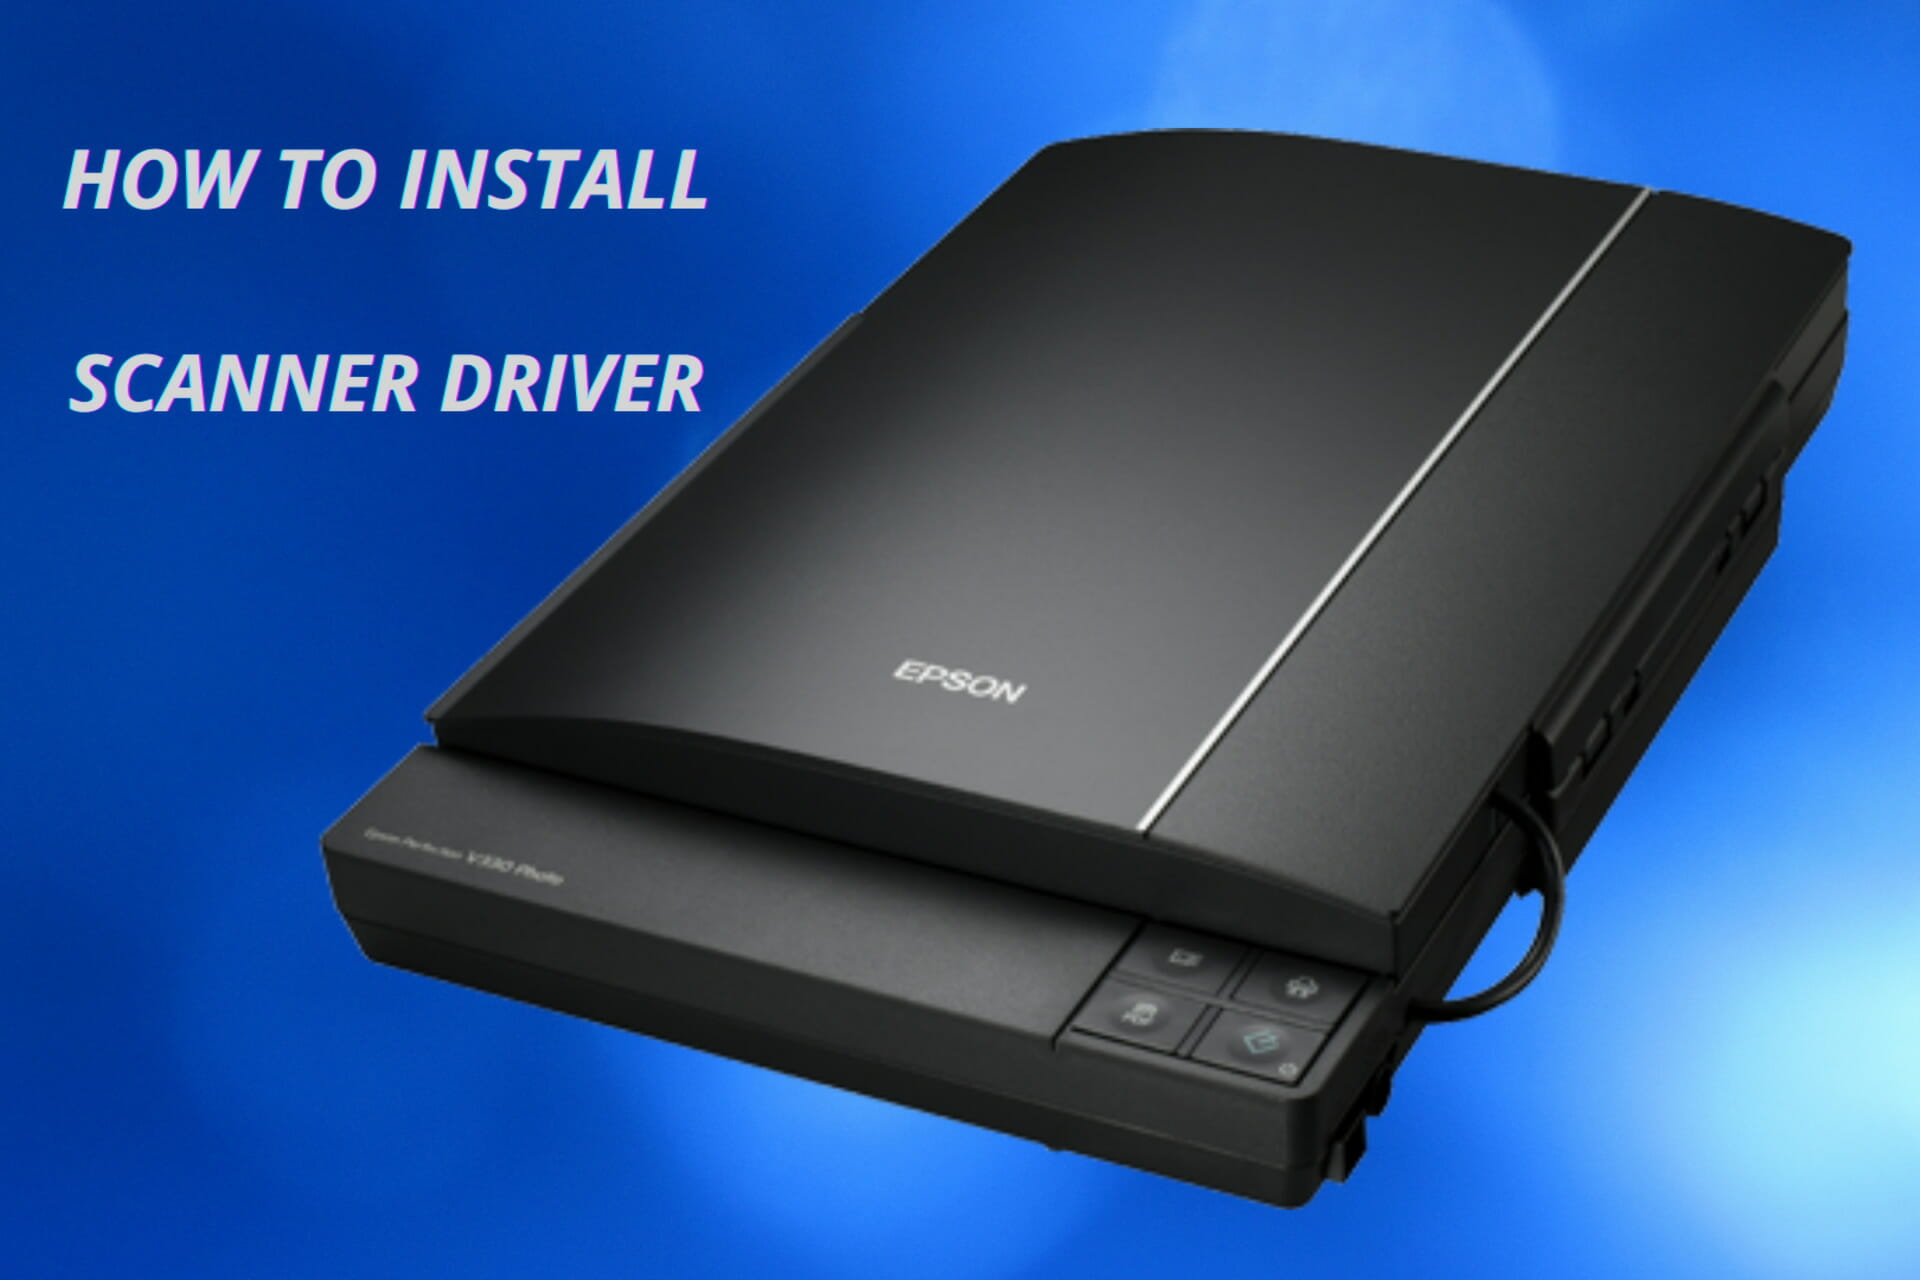 Easily install Epson scanner driver